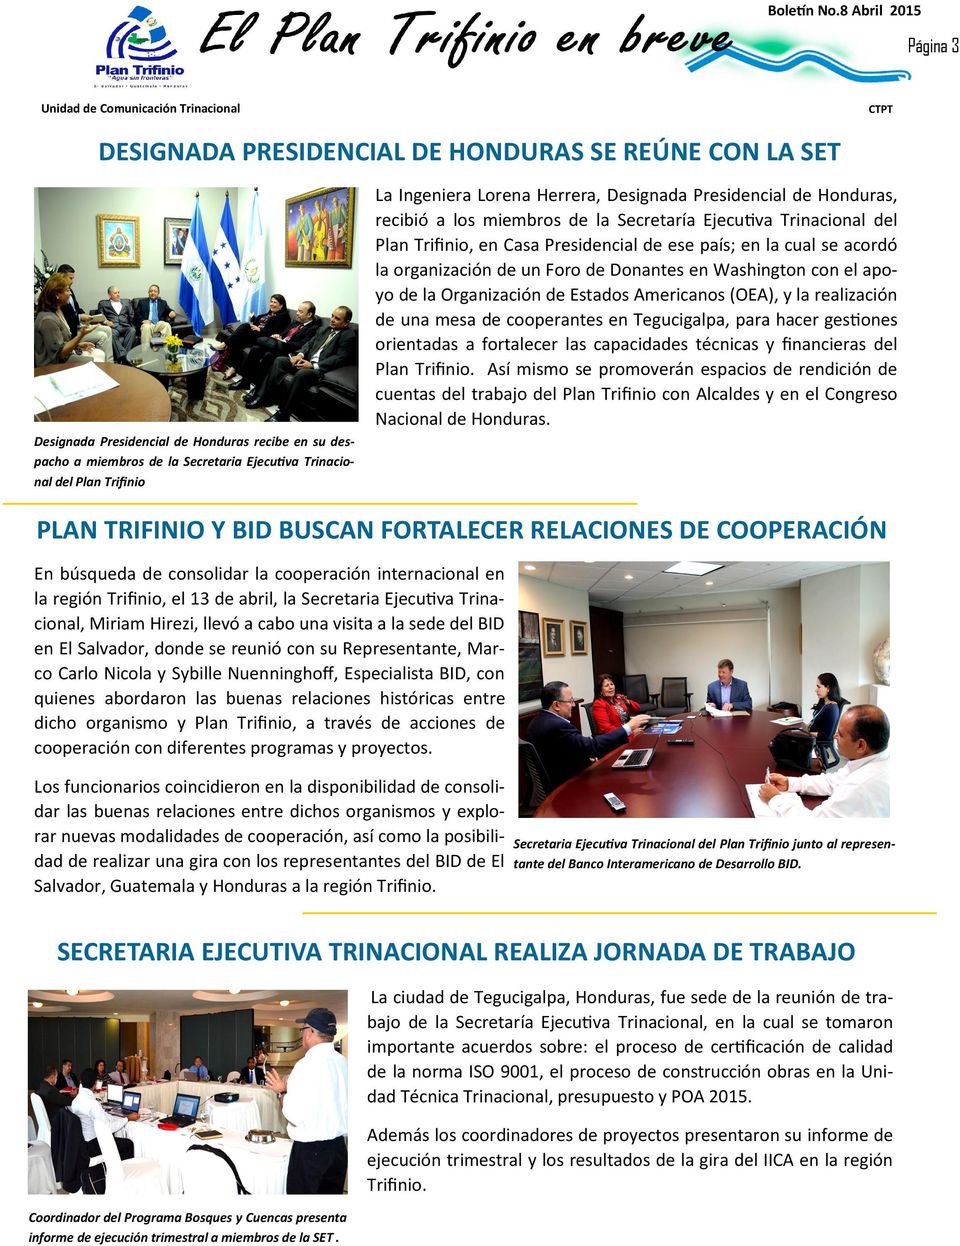 y la realización de una mesa de cooperantes en Tegucigalpa, para hacer gestiones orientadas a fortalecer las capacidades técnicas y financieras del Plan Trifinio.